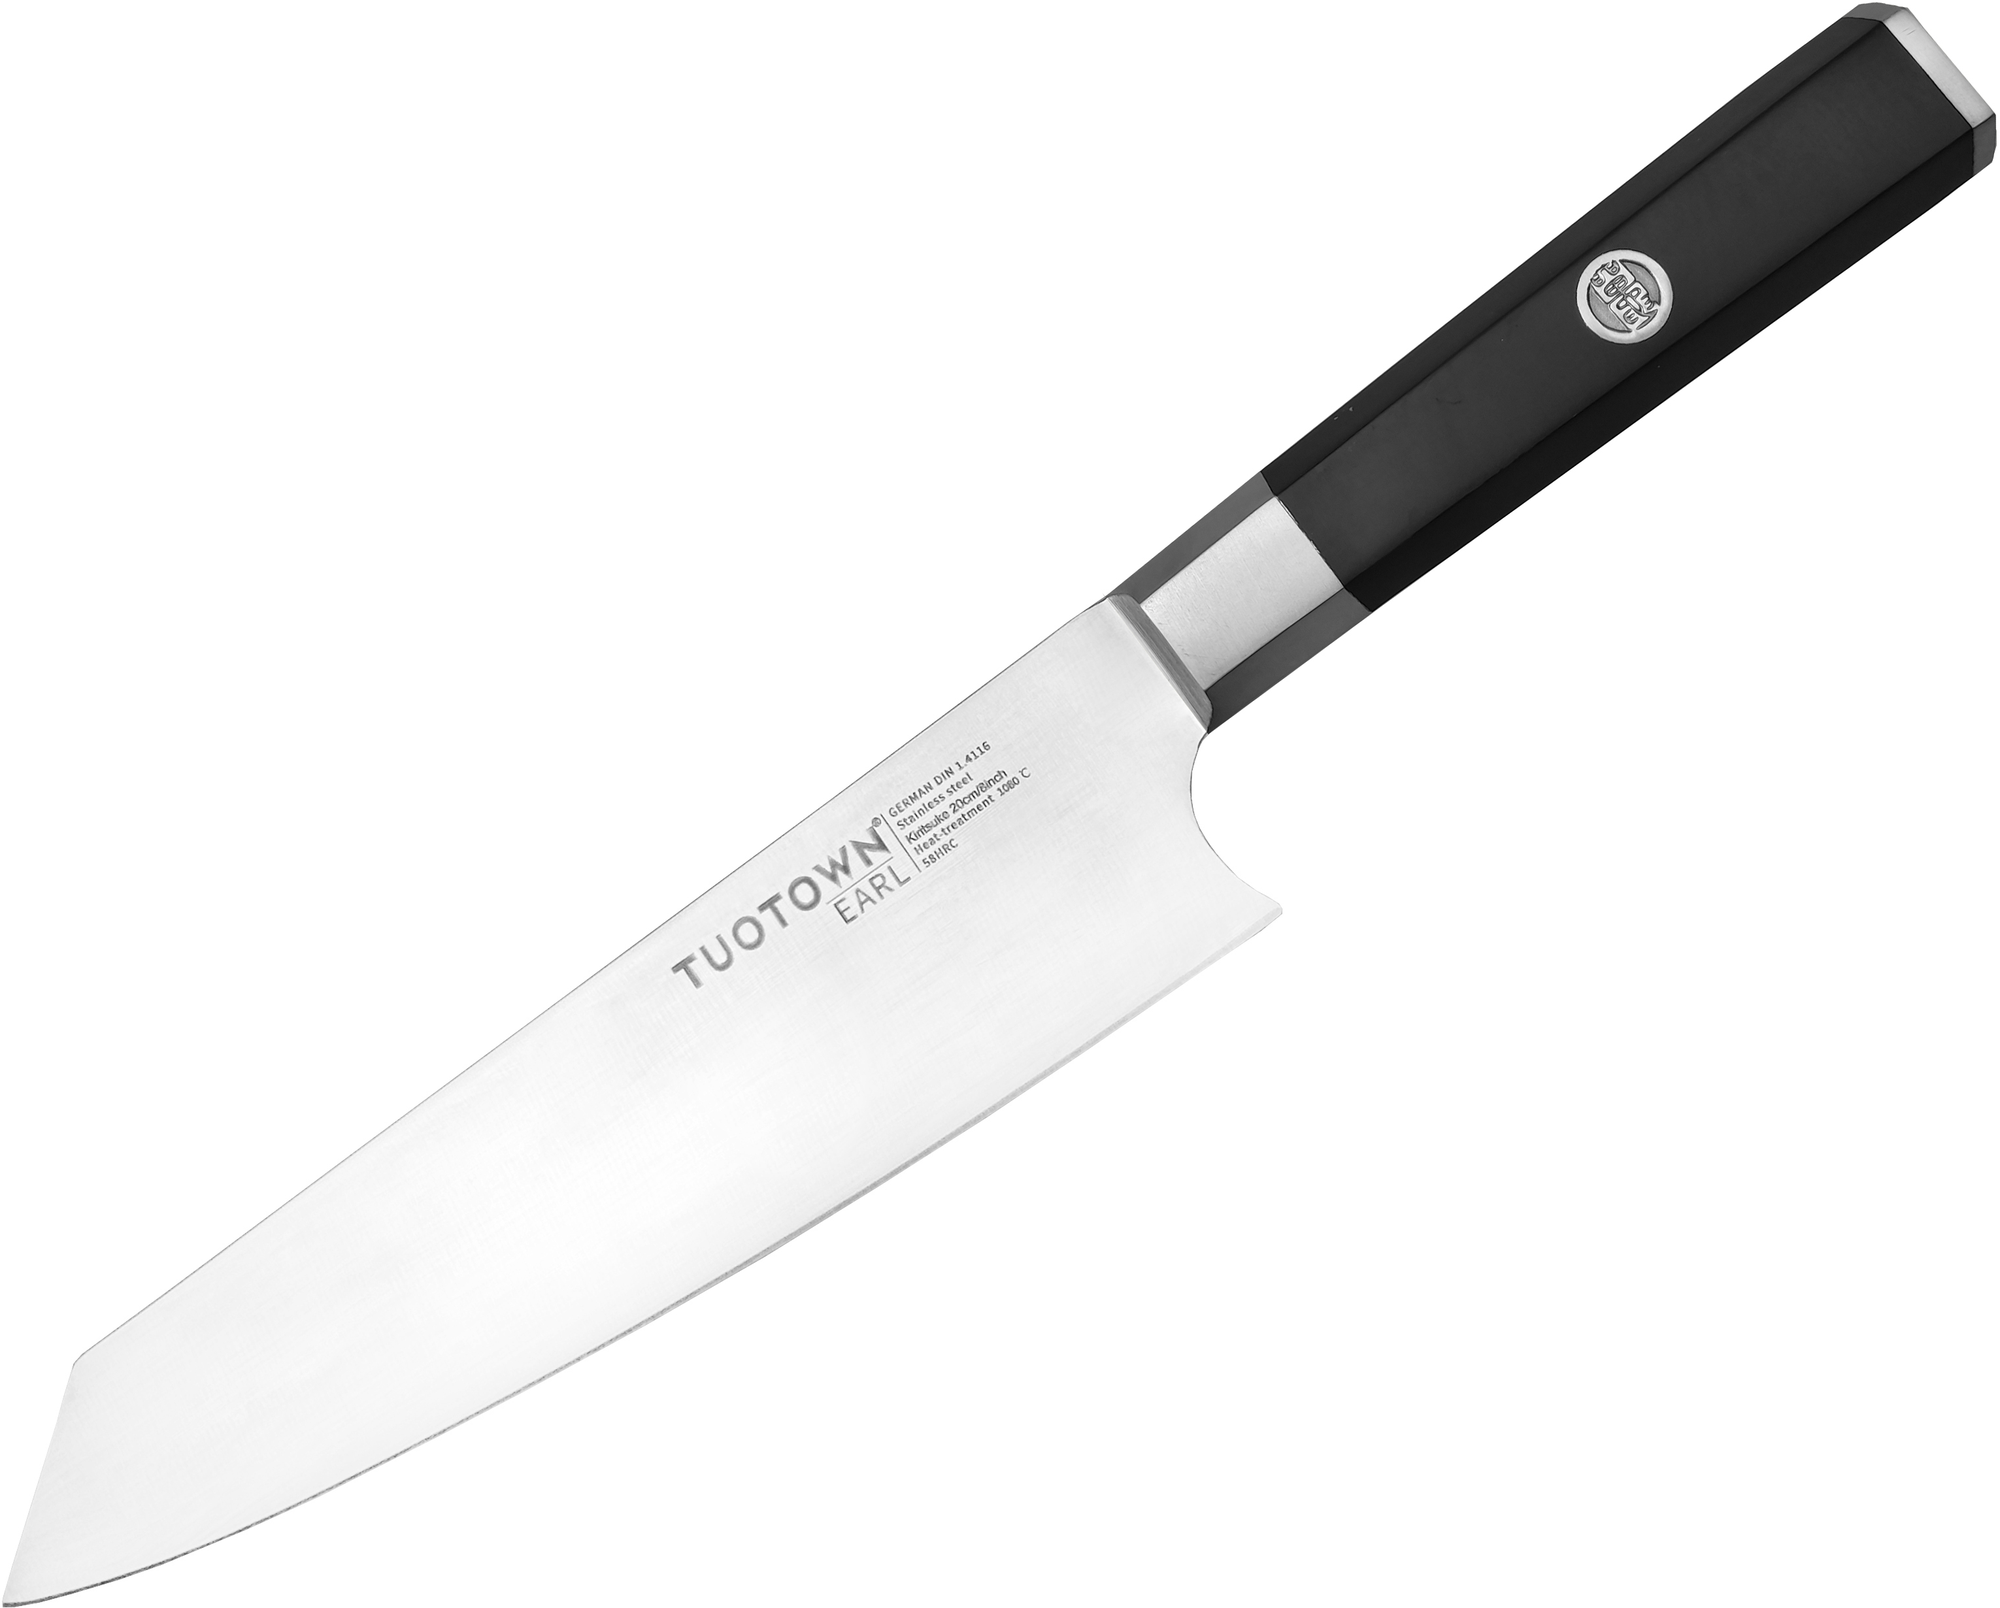 Кухонный нож Kiritsuke серии Earl, TUOTOWN